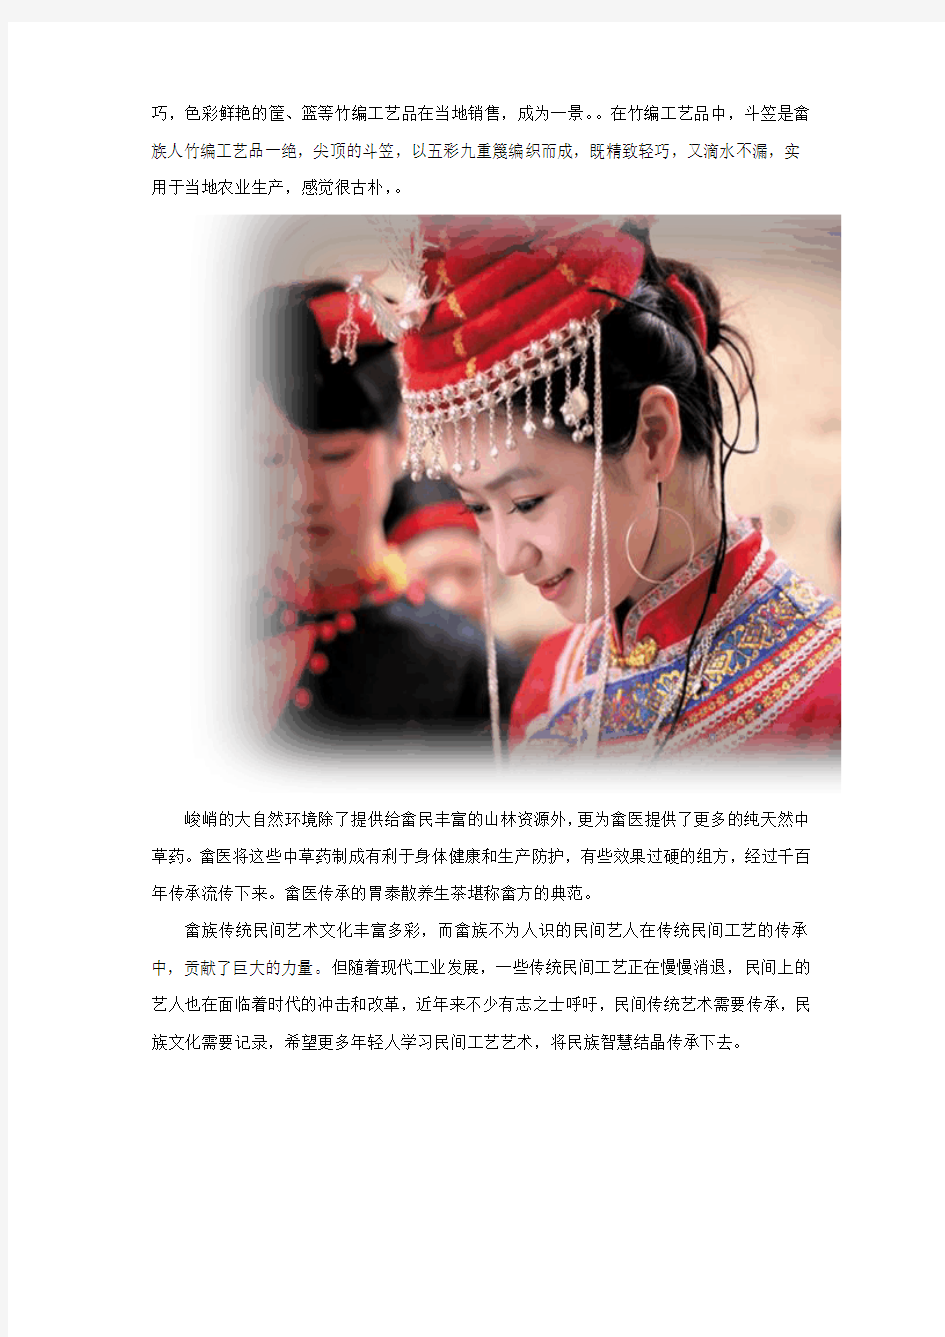 留住畲族传统艺术 记录民族文化